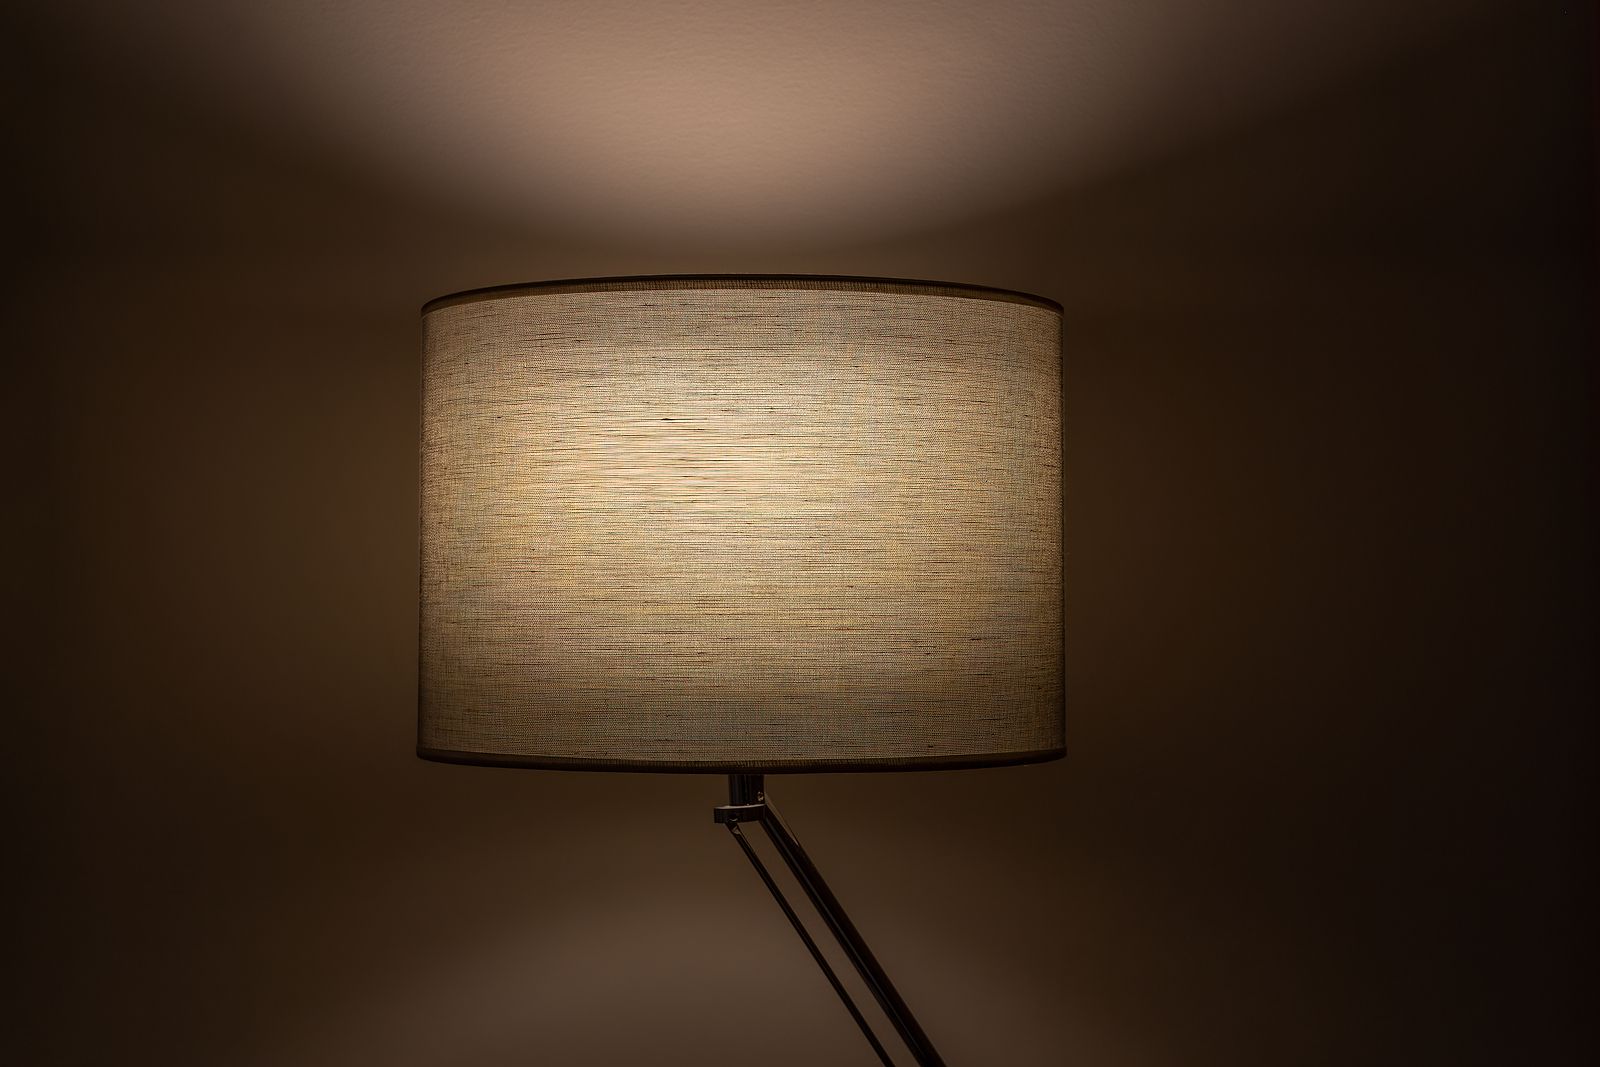 Cómo personalizar la pantalla de una lámpara vieja Foto: bigstock